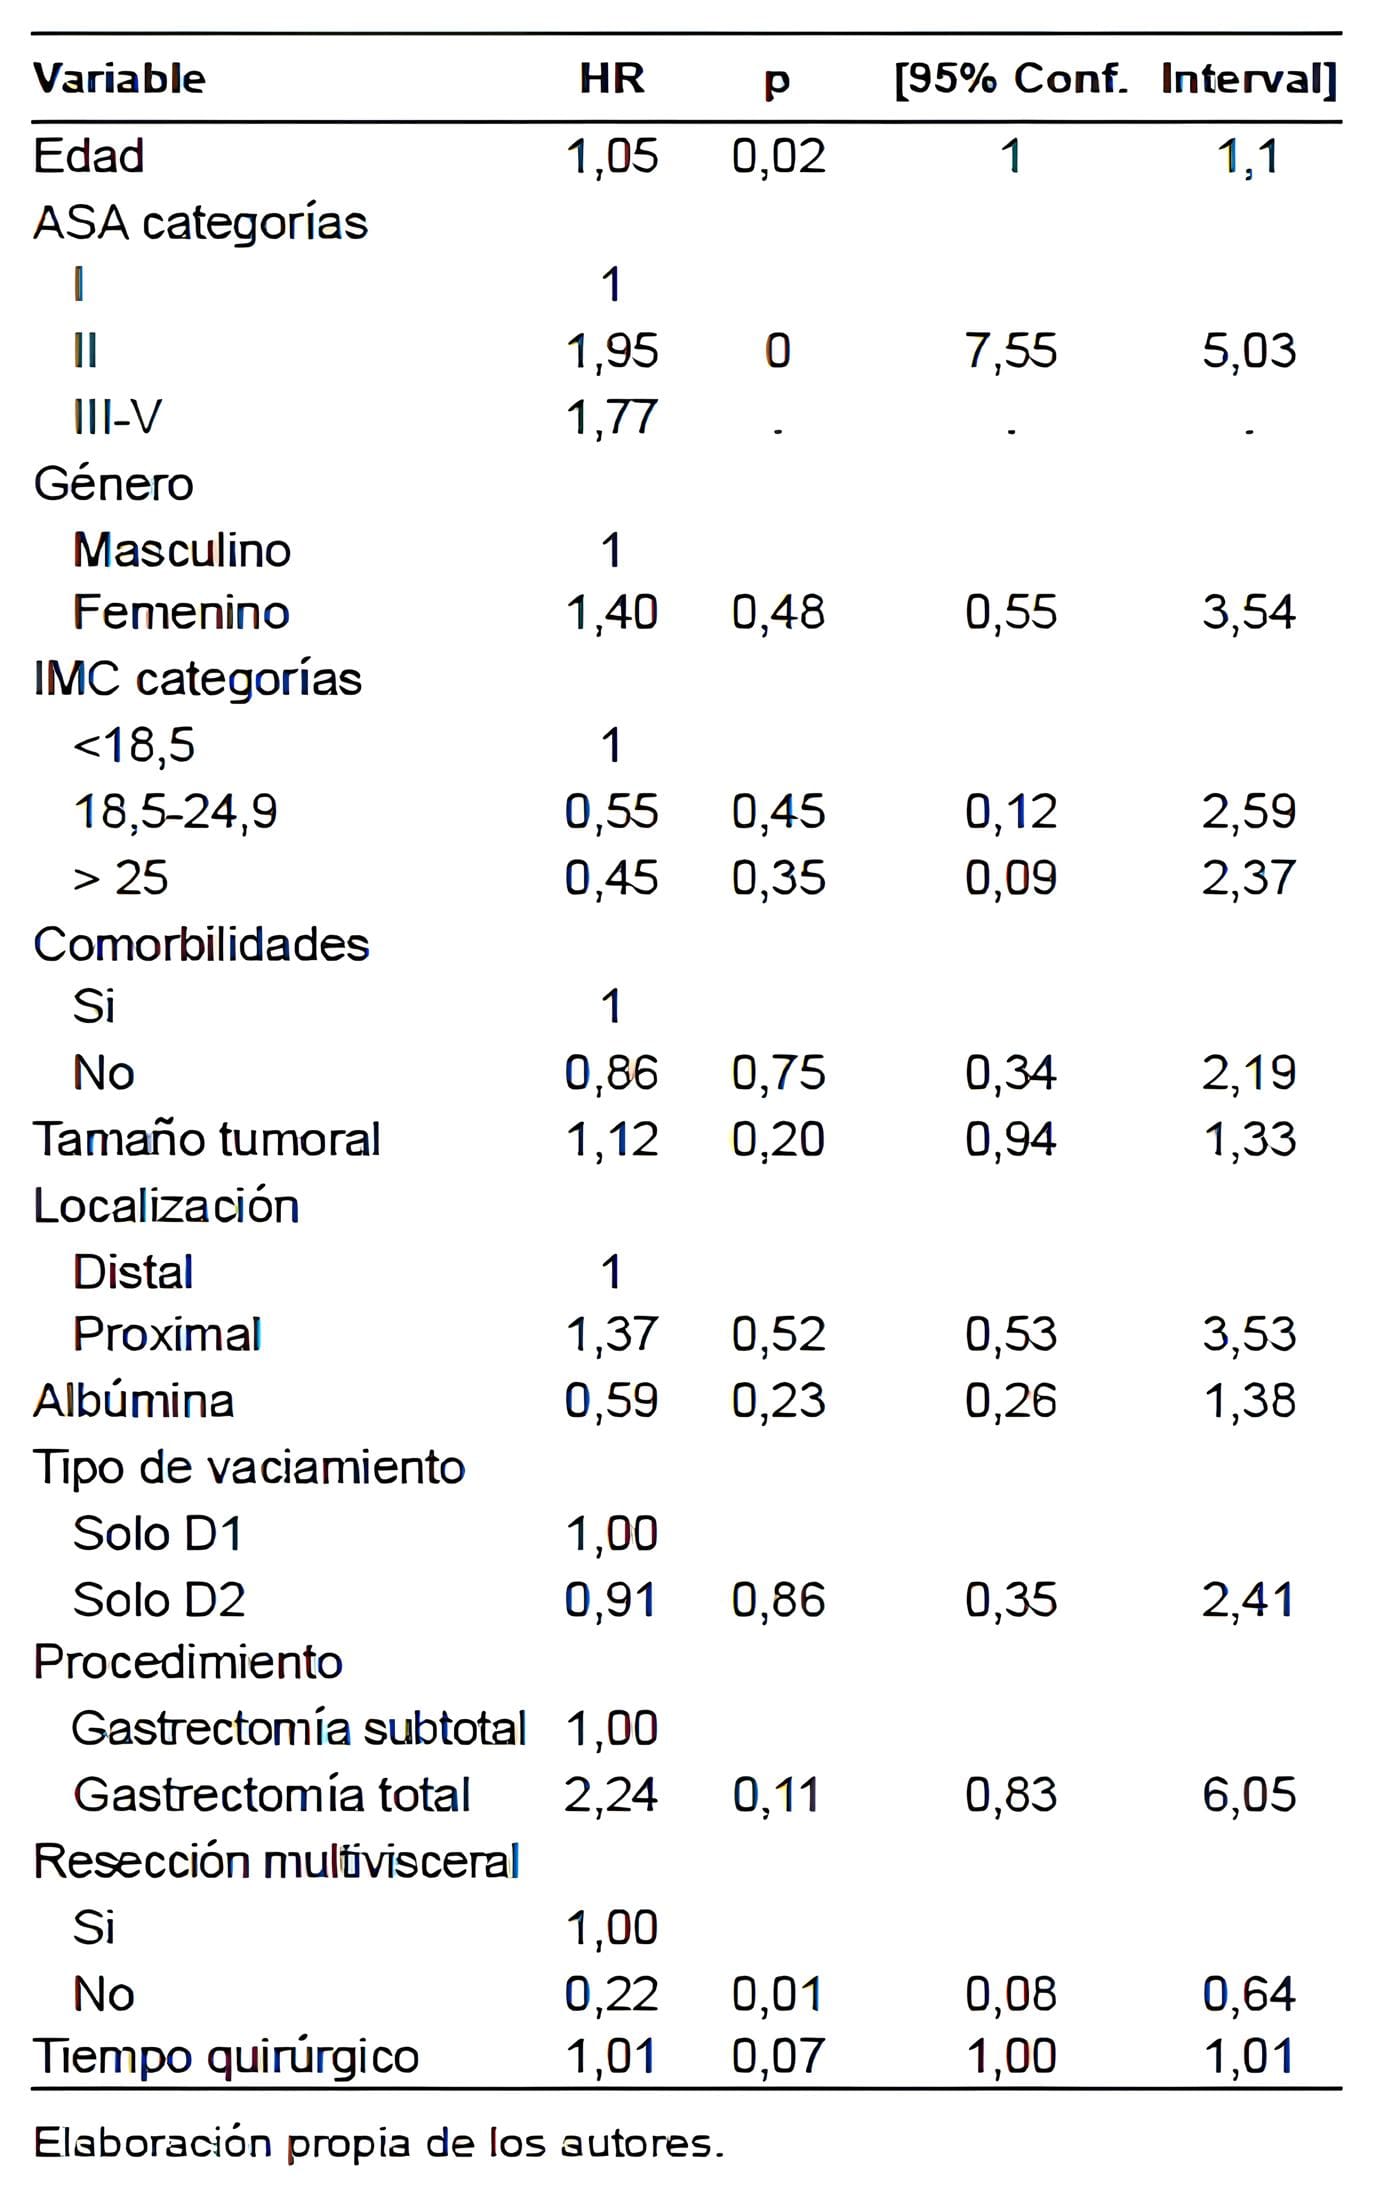 Gastrectomía por Cáncer Gástrico - Riesgo con valor estadístico de p según variables.